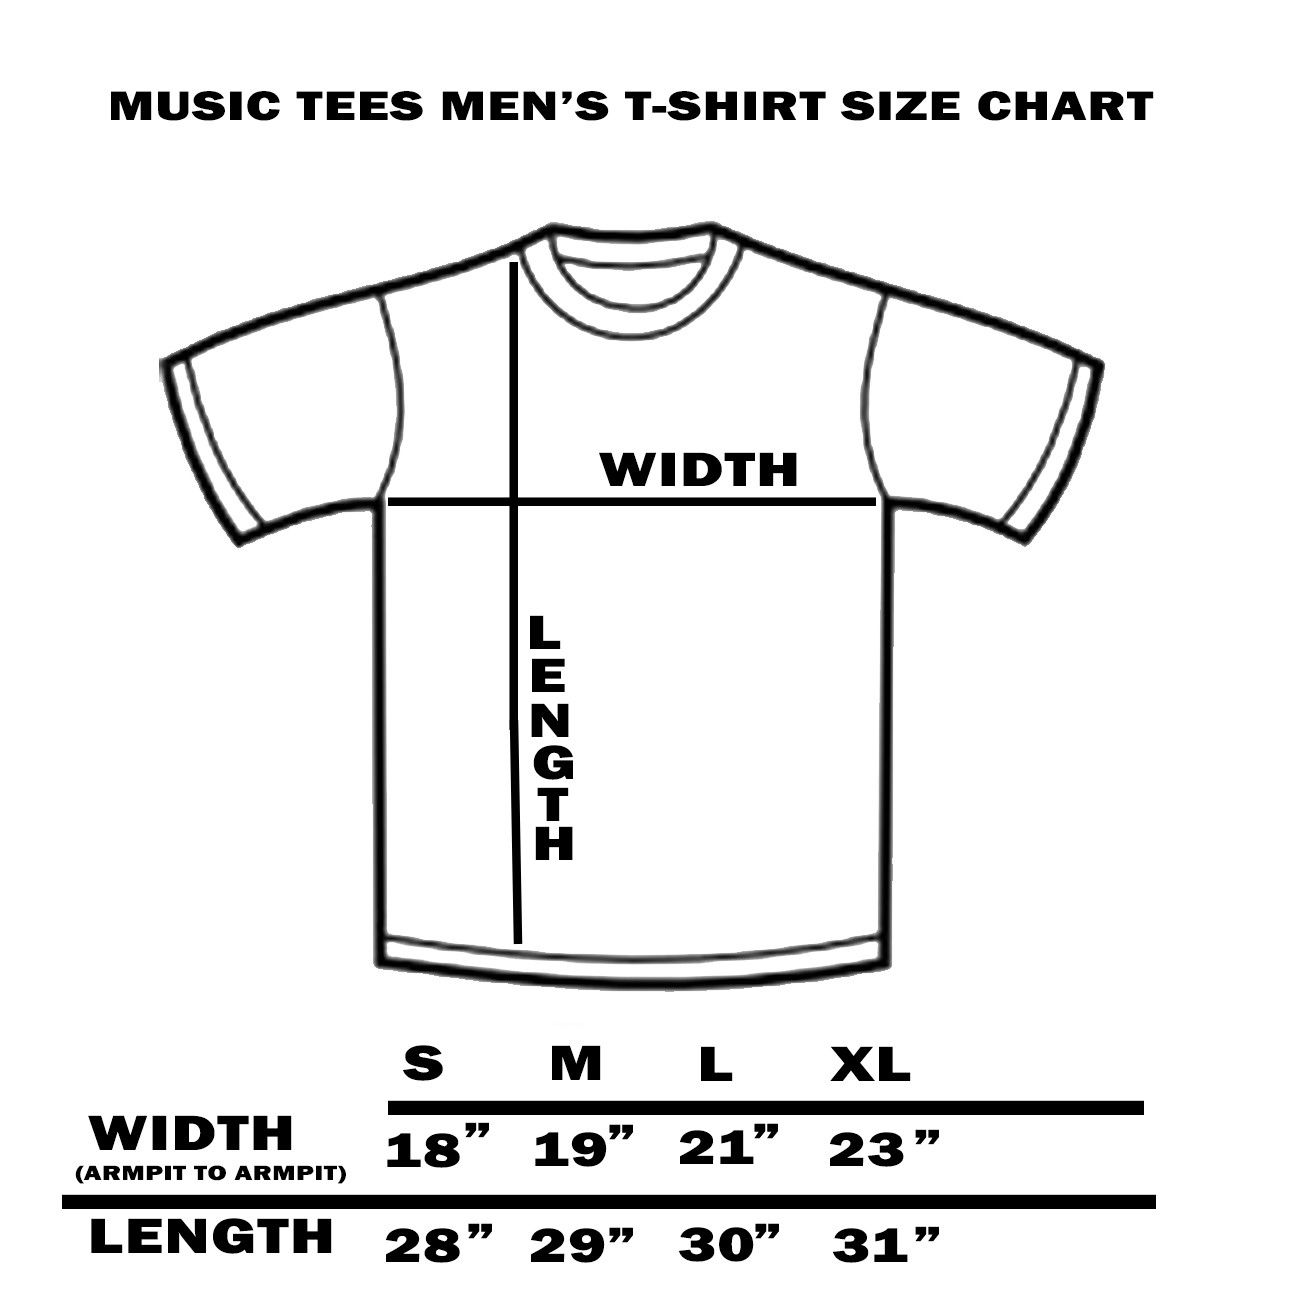 The Beatles 1968 World Tour Lennon McCartney Men's Graphic T-Shirt